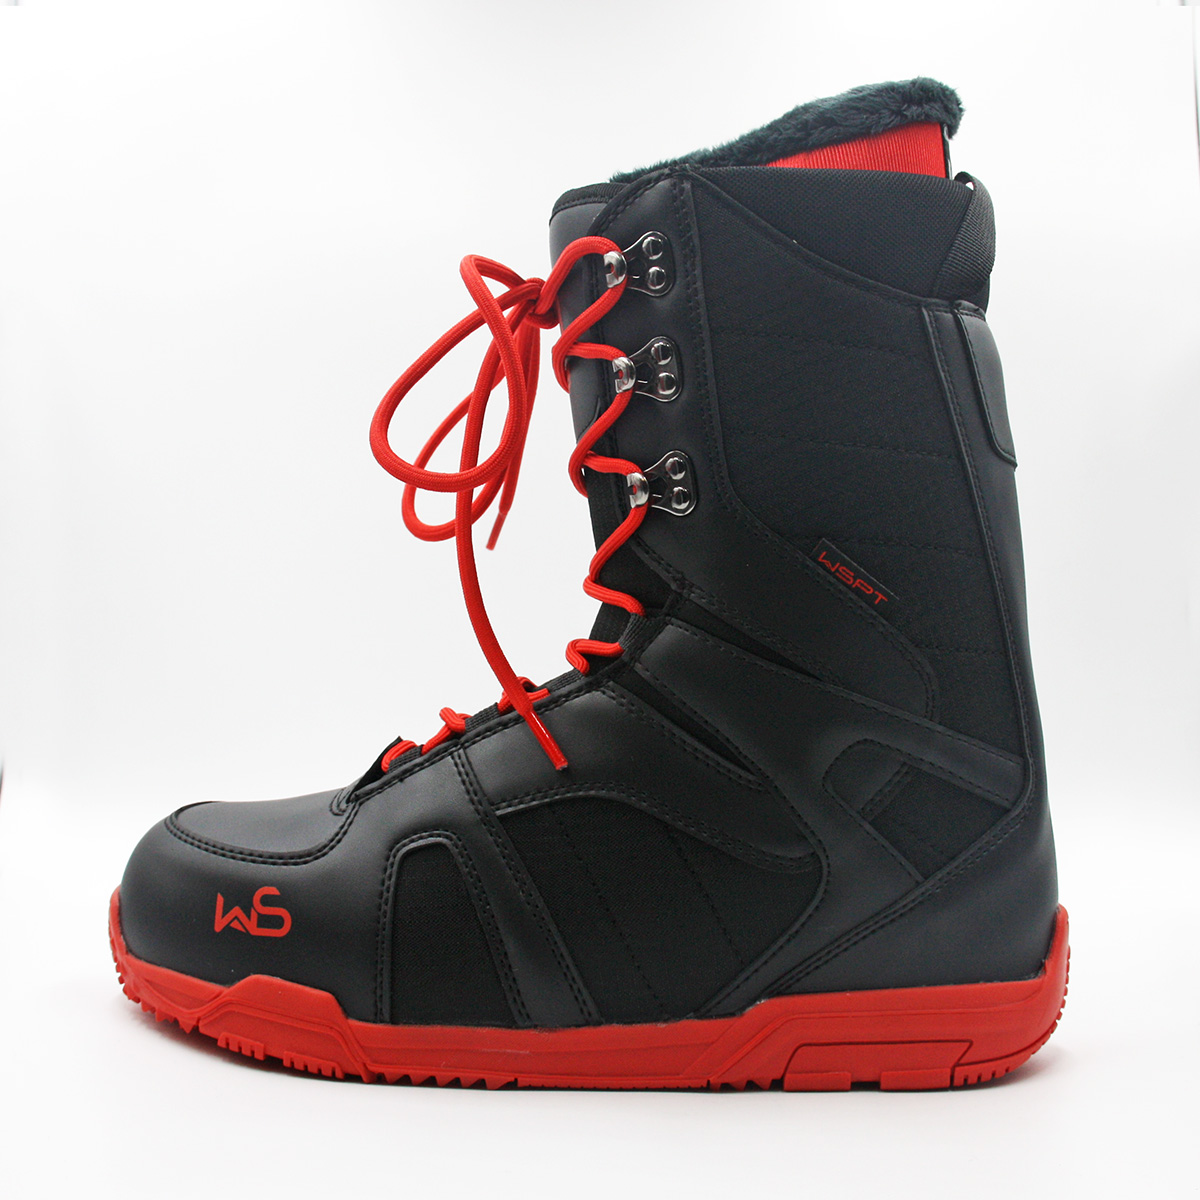 Ботинки для сноуборда WS Red